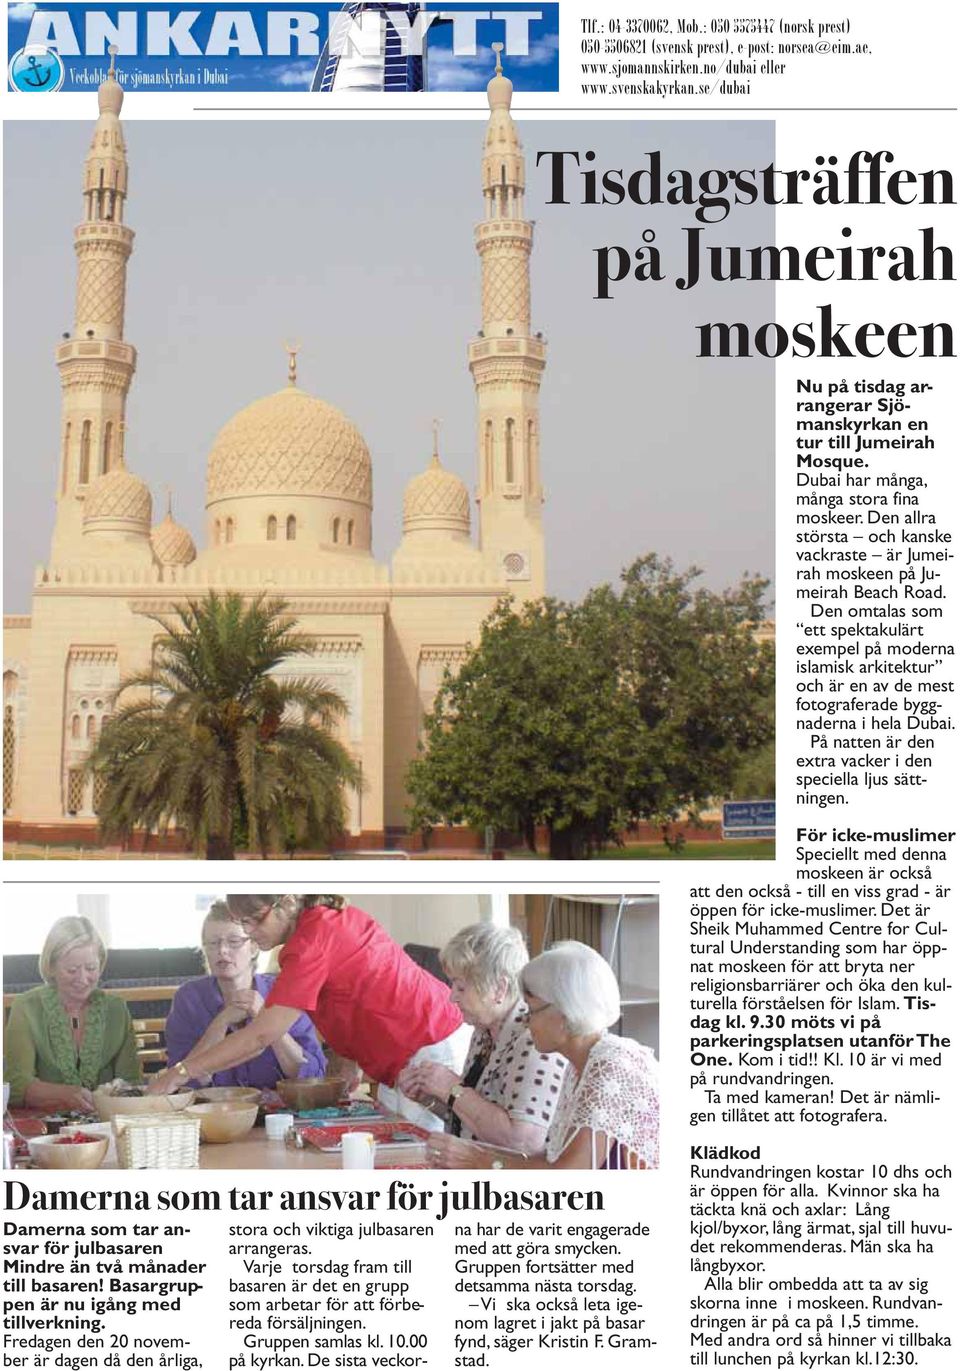 Den allra största och kan ske vackraste är Jumeirah moskeen på Jumeirah Beach Road.